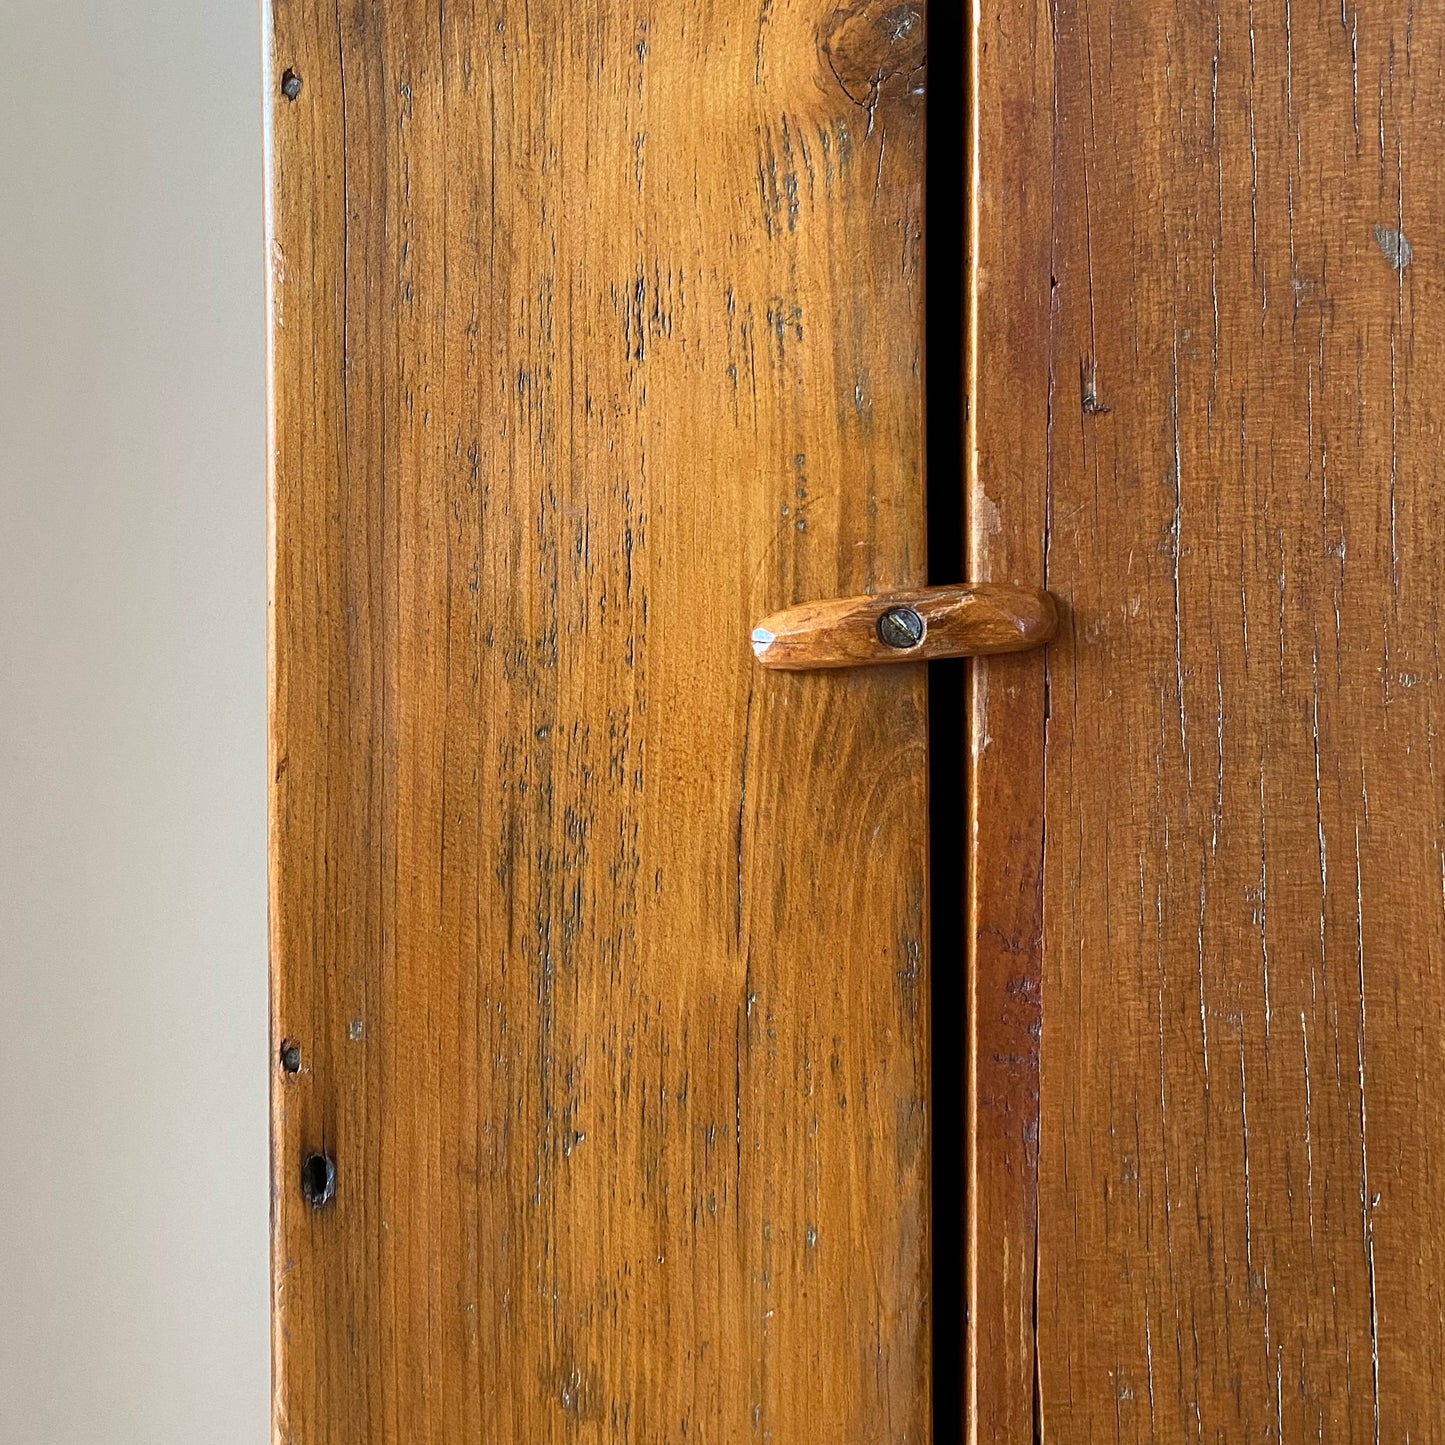 Antique Handmade Wooden Storage Cupboard